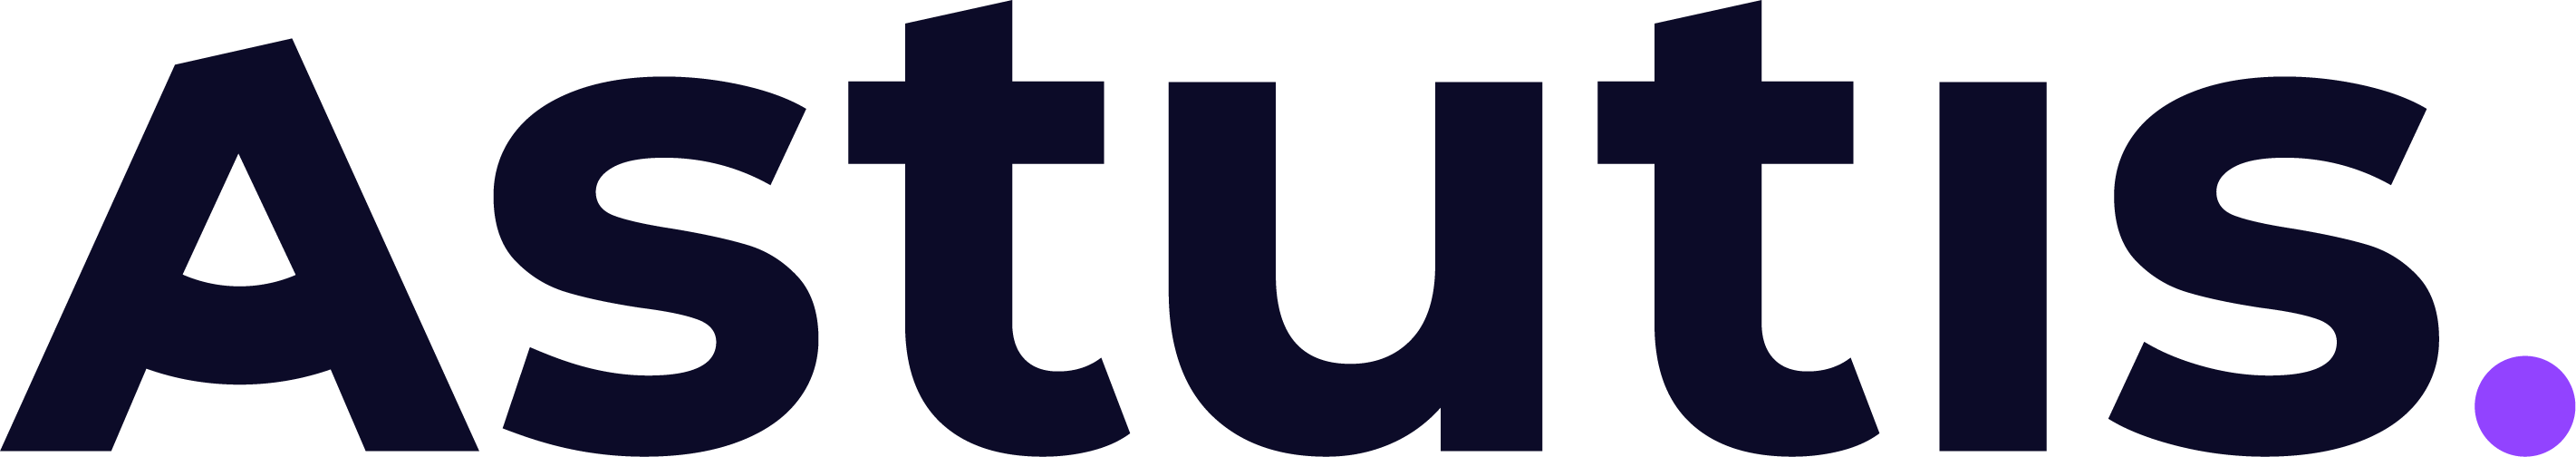 Astutis logo